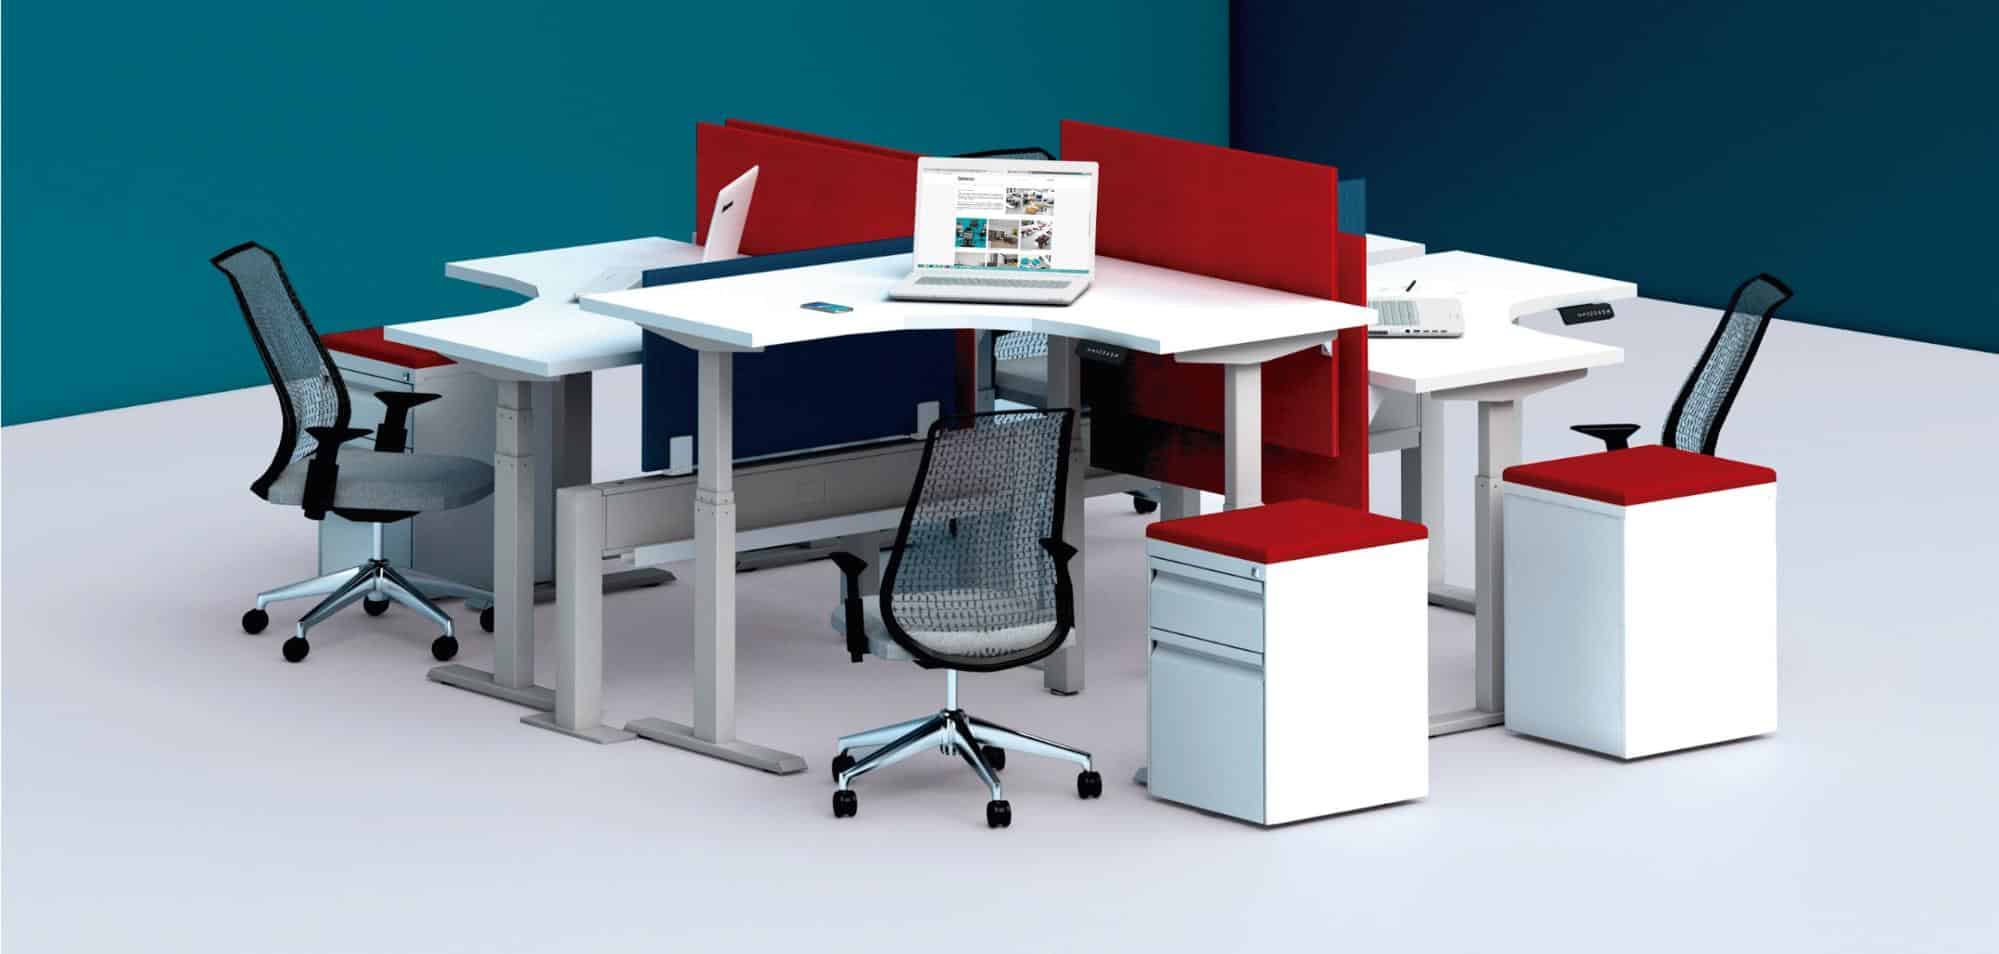 Ergonomic Office Furniture: Must-Have Equipment